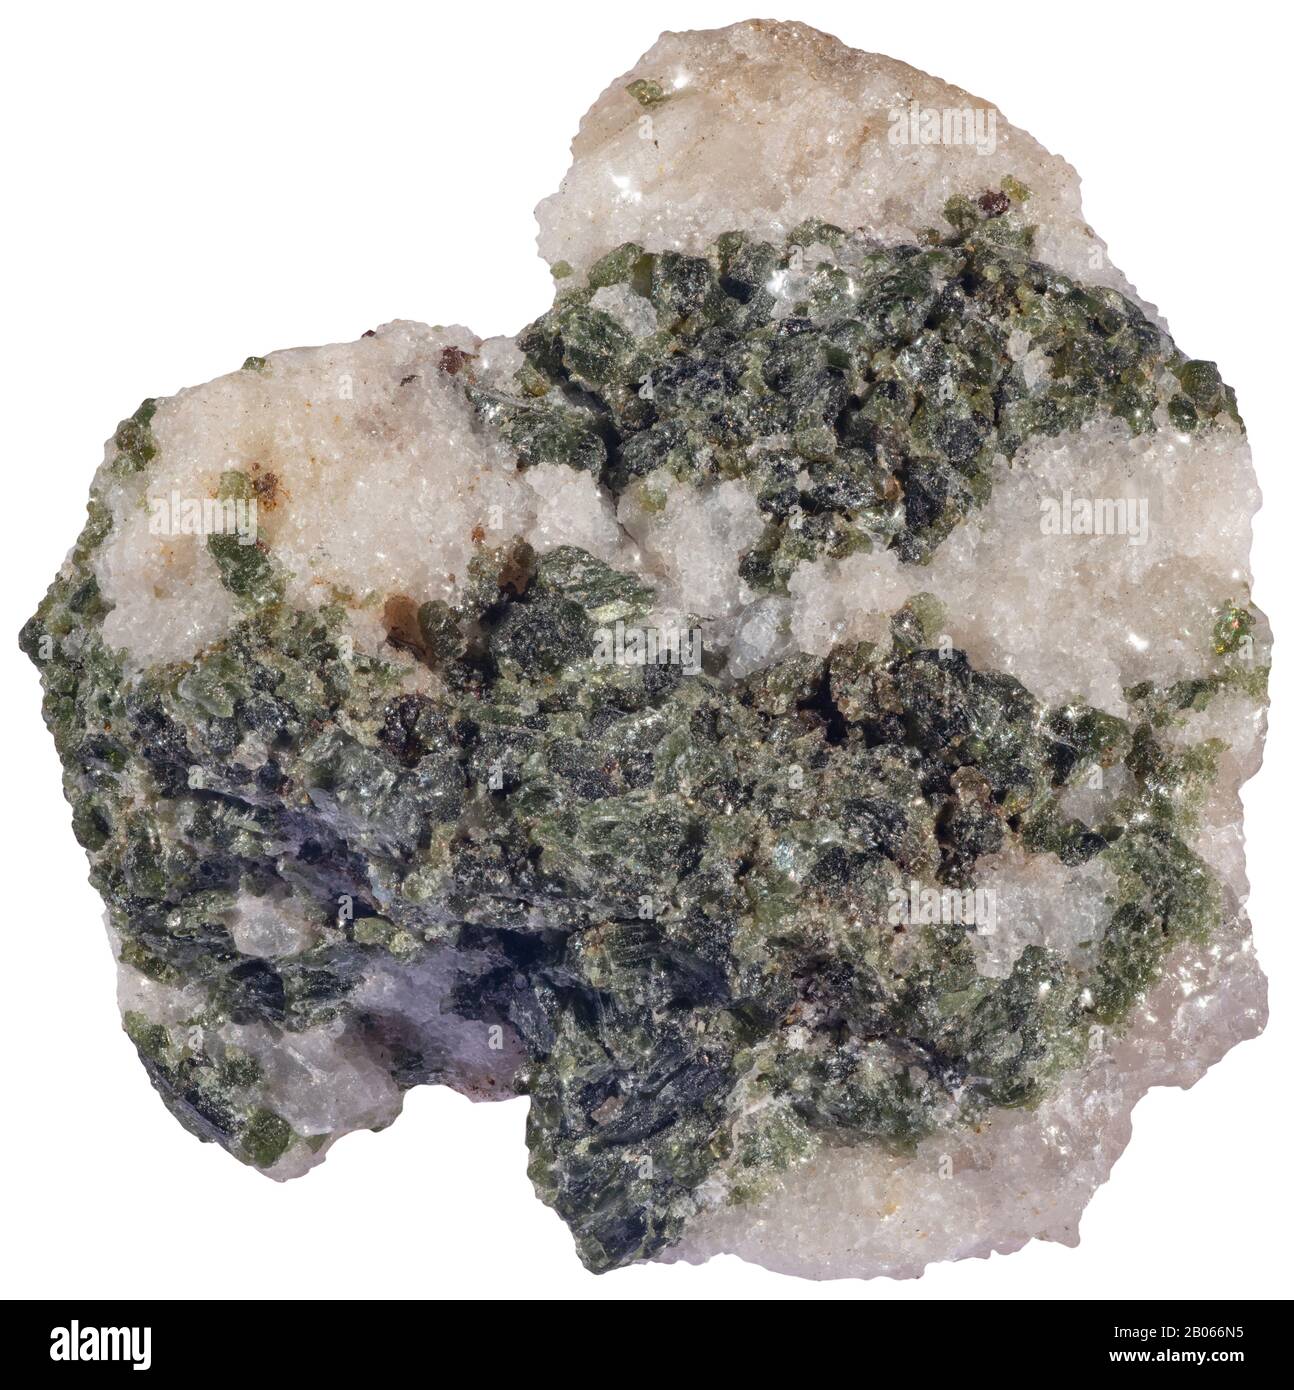 Le Gabbro grossier, Grenville (Québec) le Gabbro est un rocher igné intrusif de couleur foncée à grain grossier. Il est phanéritique (à grain grossier), mafique intrusif Banque D'Images